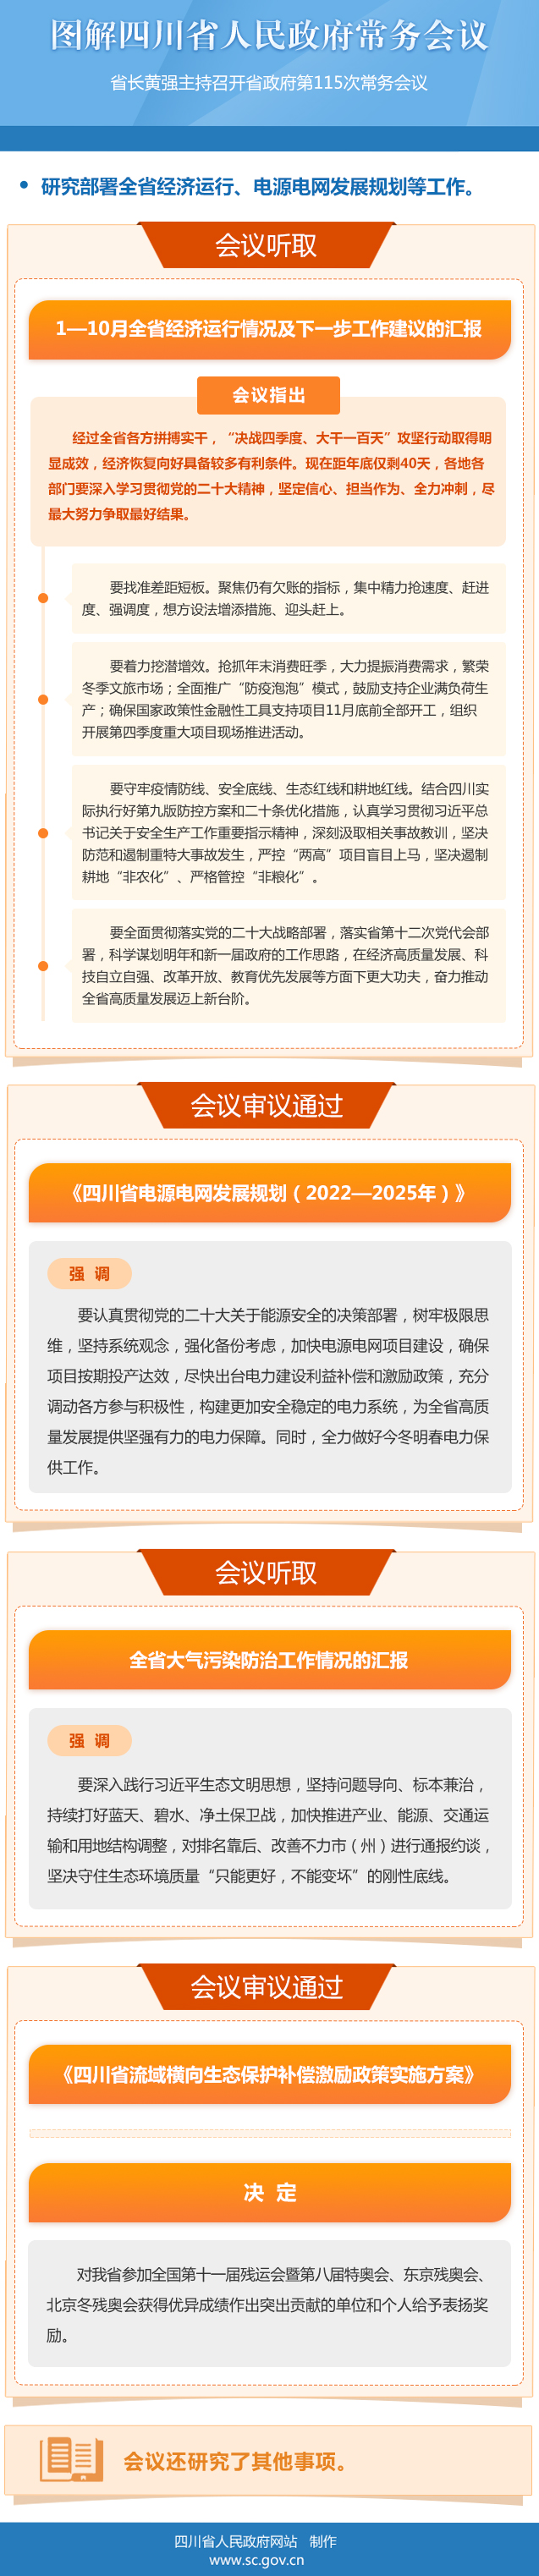 图解：四川省人民政府第115次常务会议「相关图片」